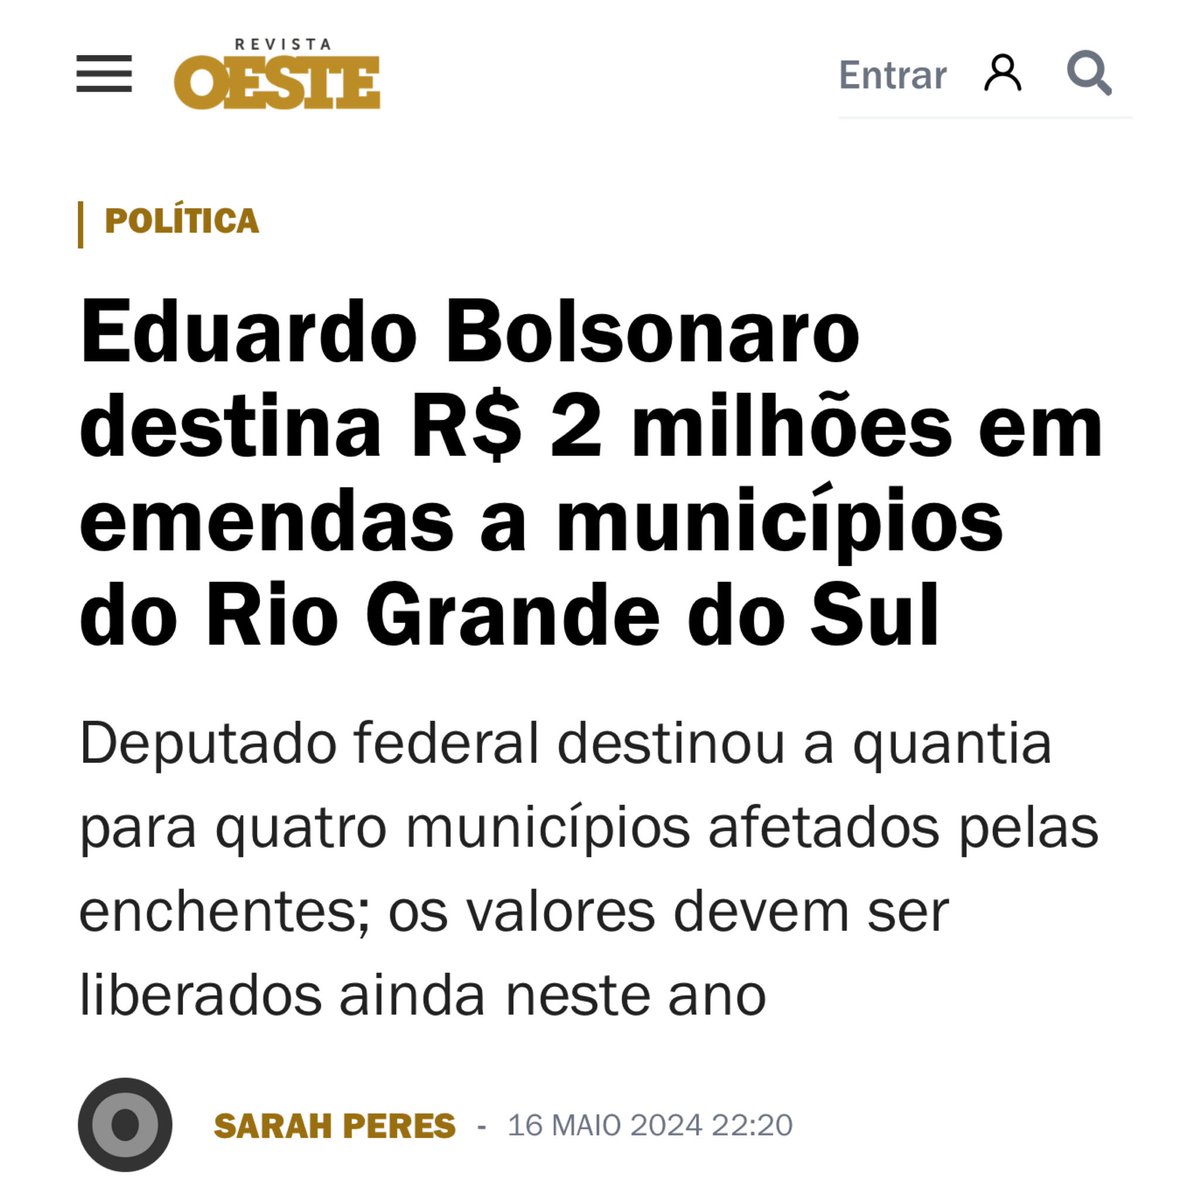 Via @BolsonaroSP